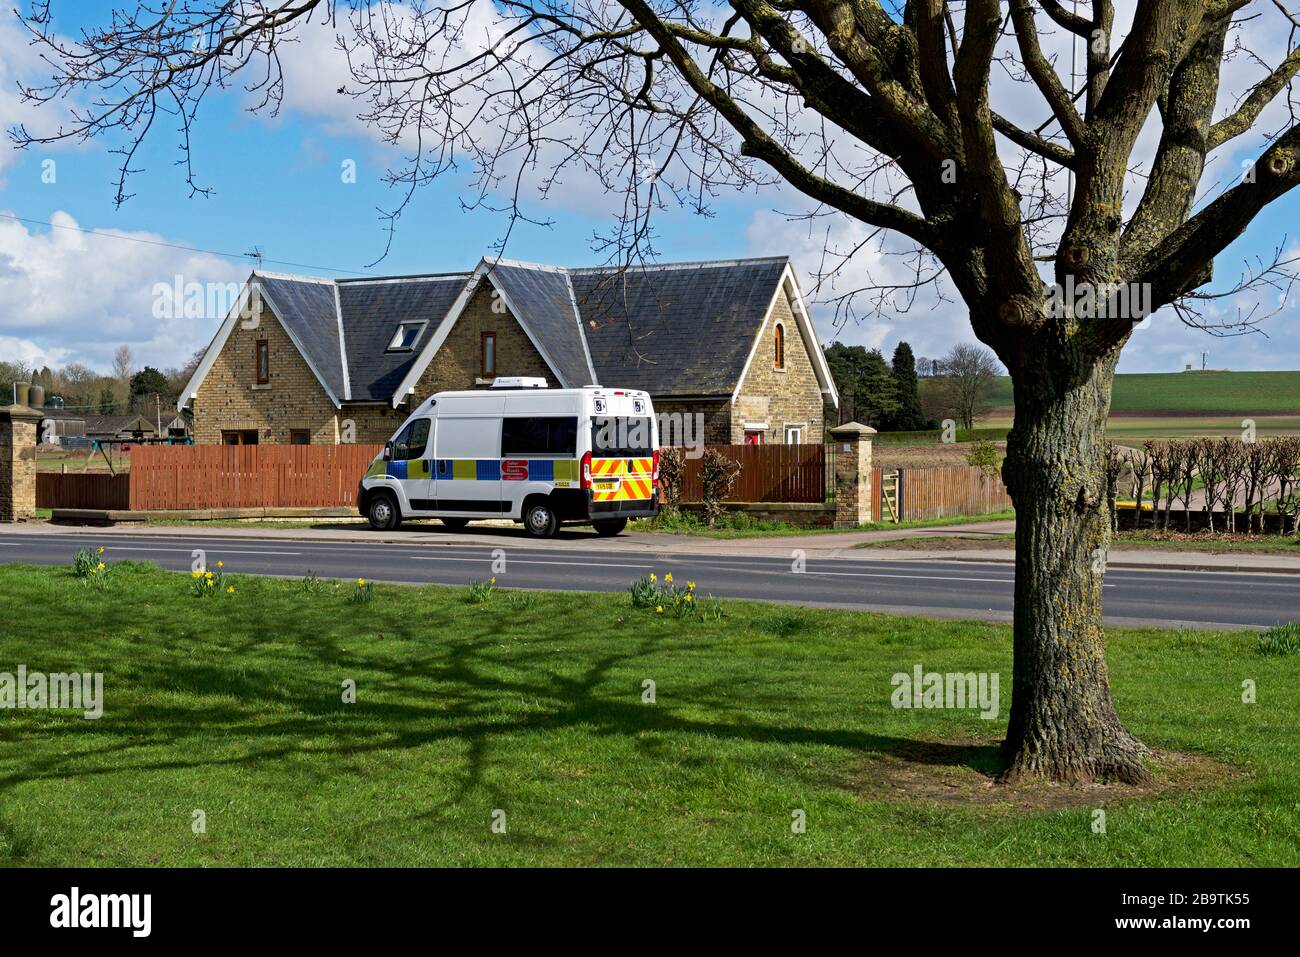 Polizei-Geschwindigkeitsdetektor-Lieferwagen, der auf der Straße in England eingesetzt wird Stockfoto